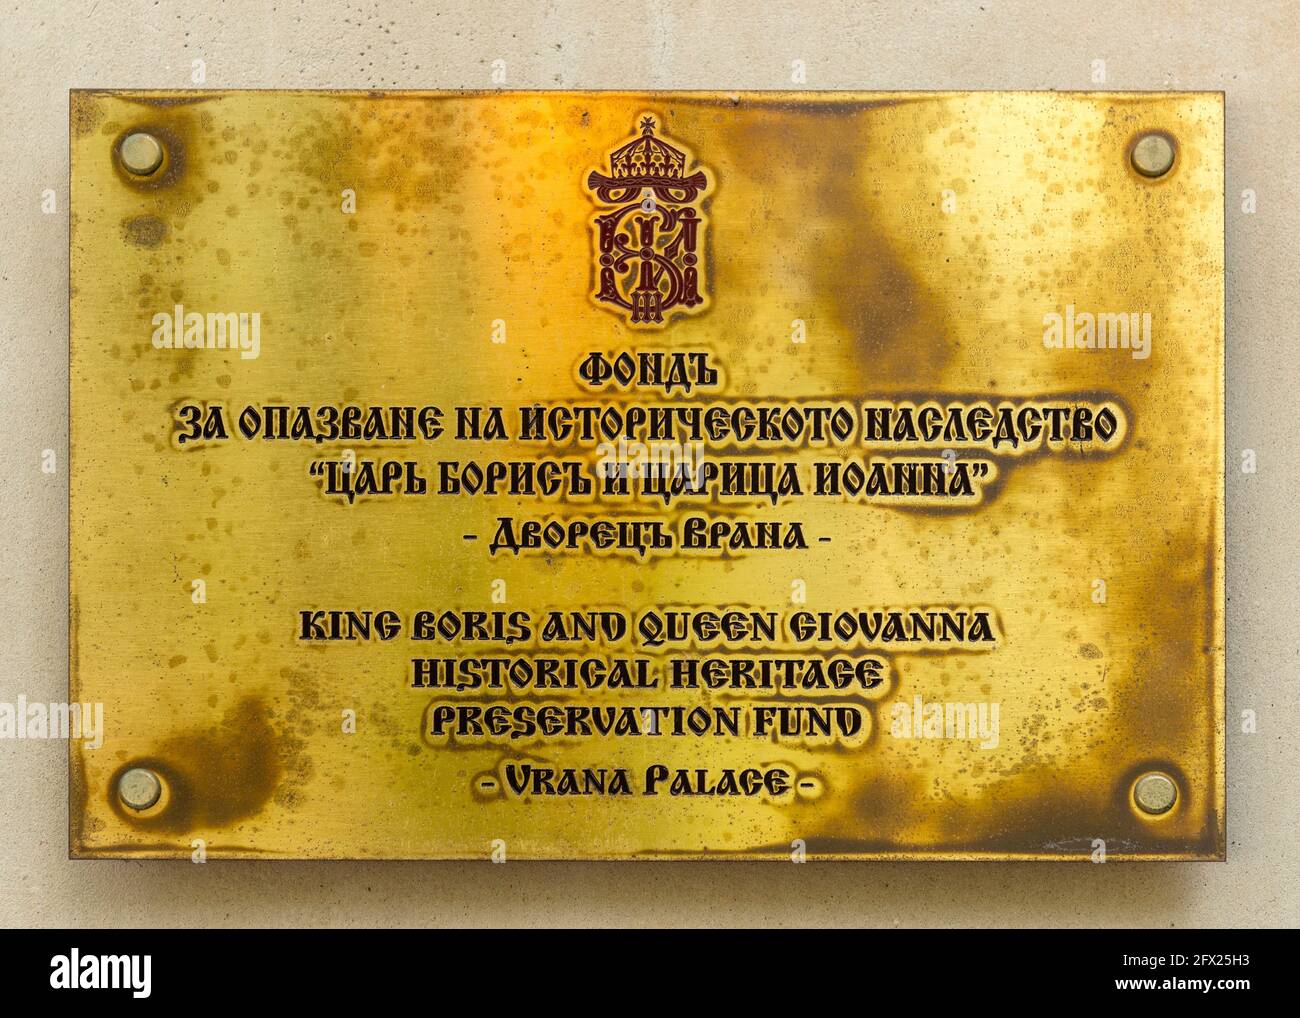 Placa de latón para el Fondo de Preservación del Patrimonio Histórico Rey Boris y Reina Giovanna en la antigua residencia real Palacio Vrana, Sofía, Bulgaria Foto de stock